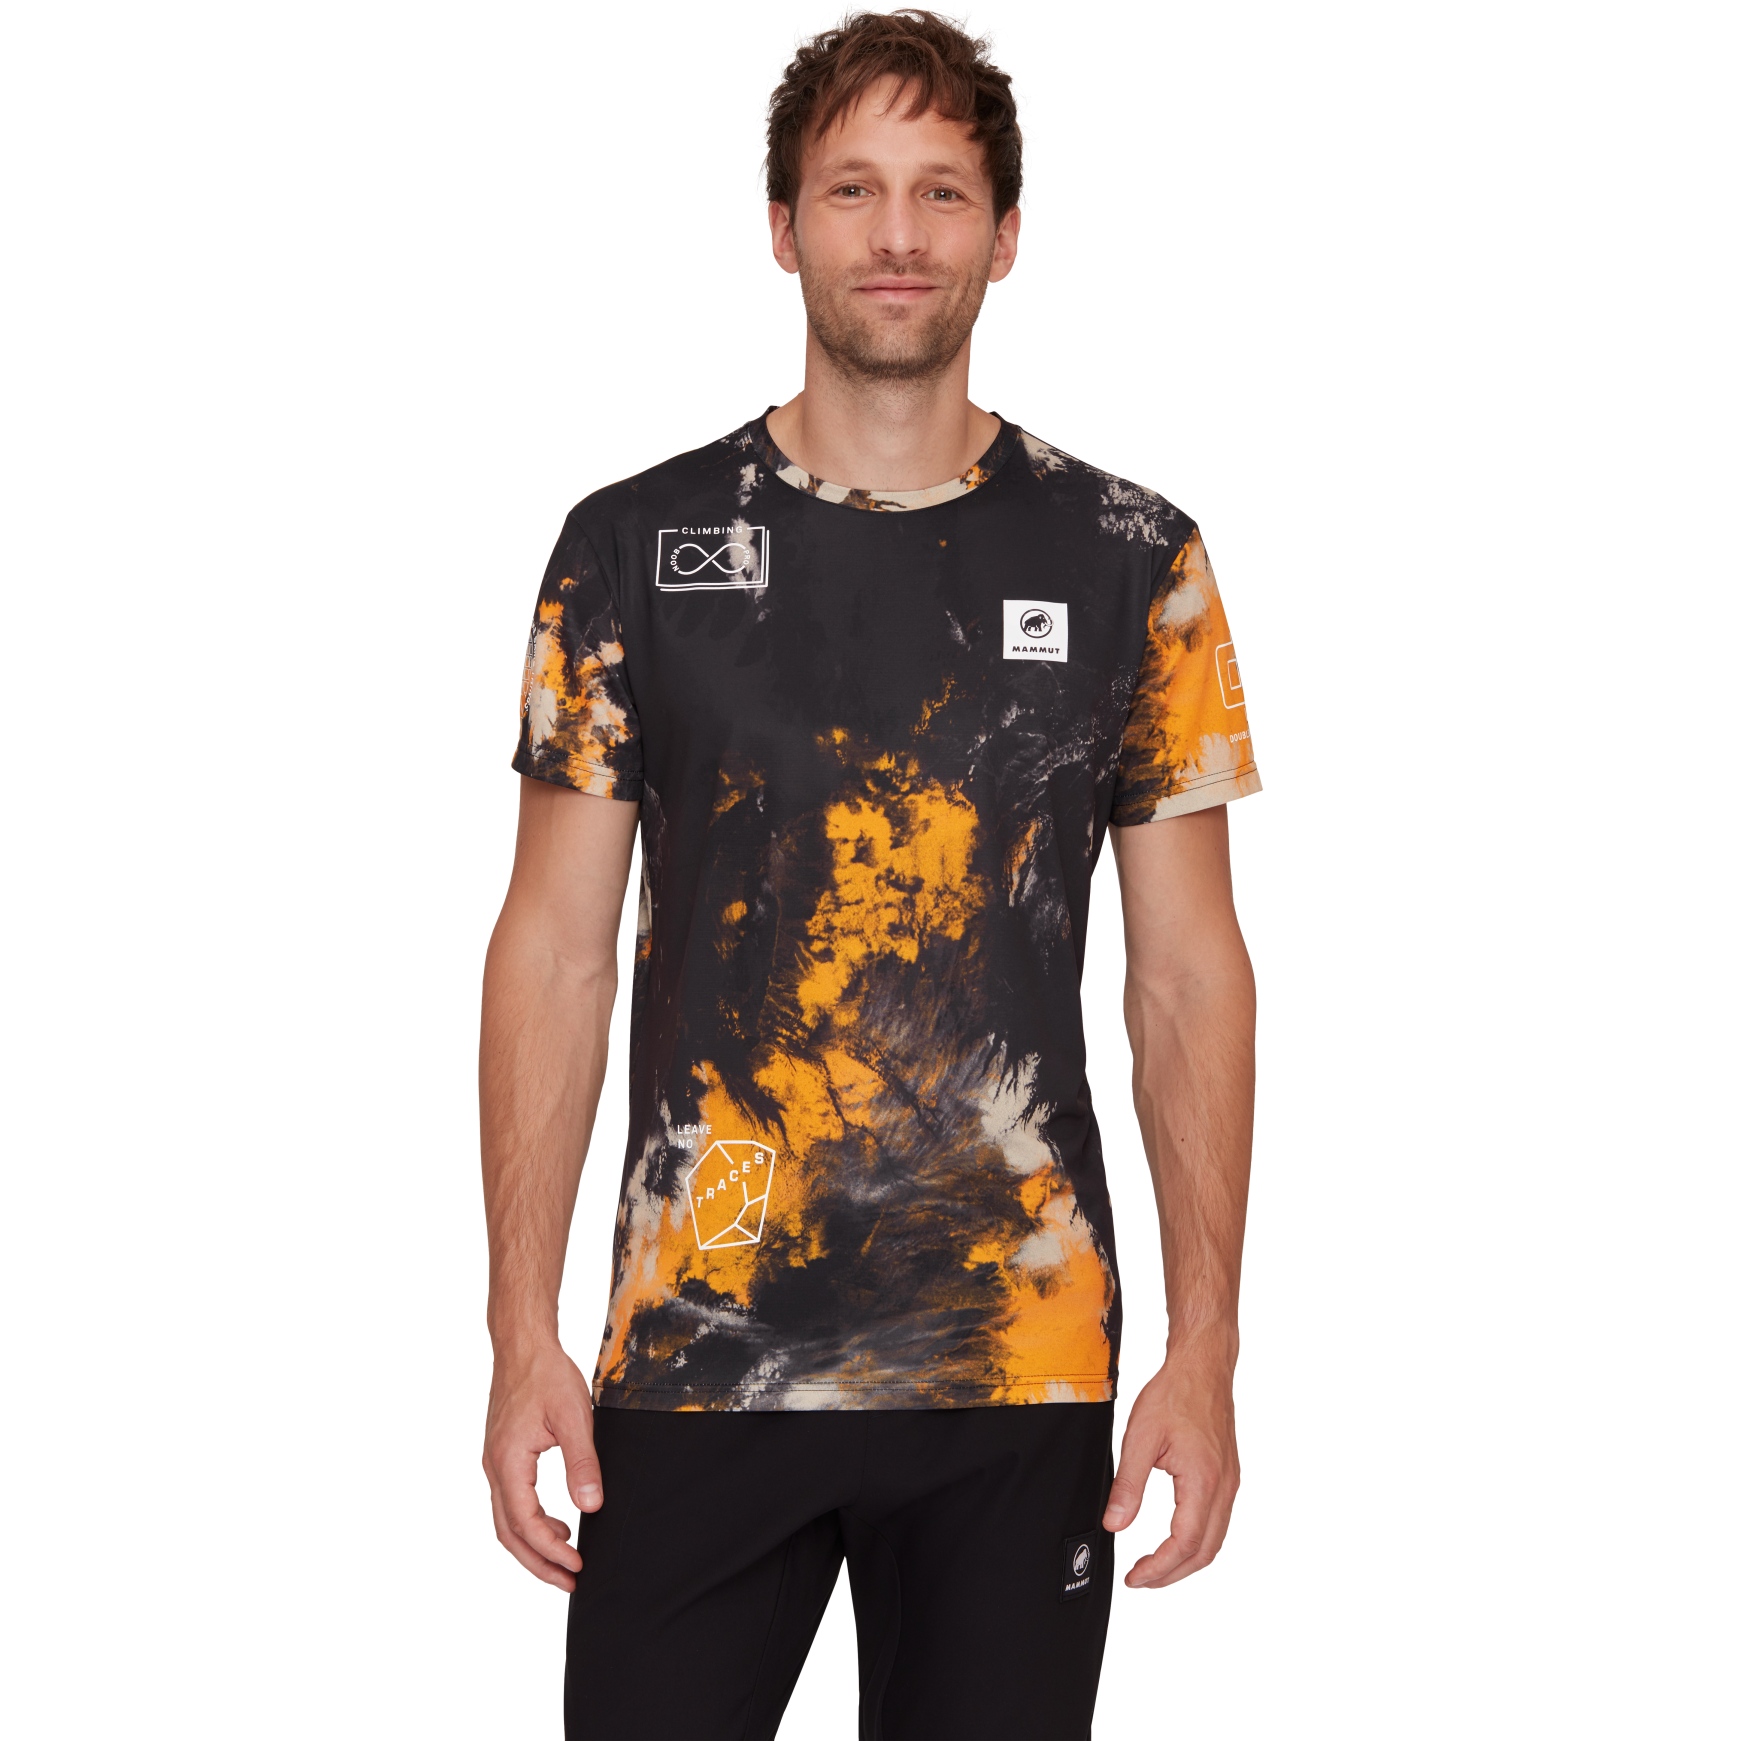 Produktbild von Mammut Massone Sender Sport T-Shirt Herren - schwarz-tangerine